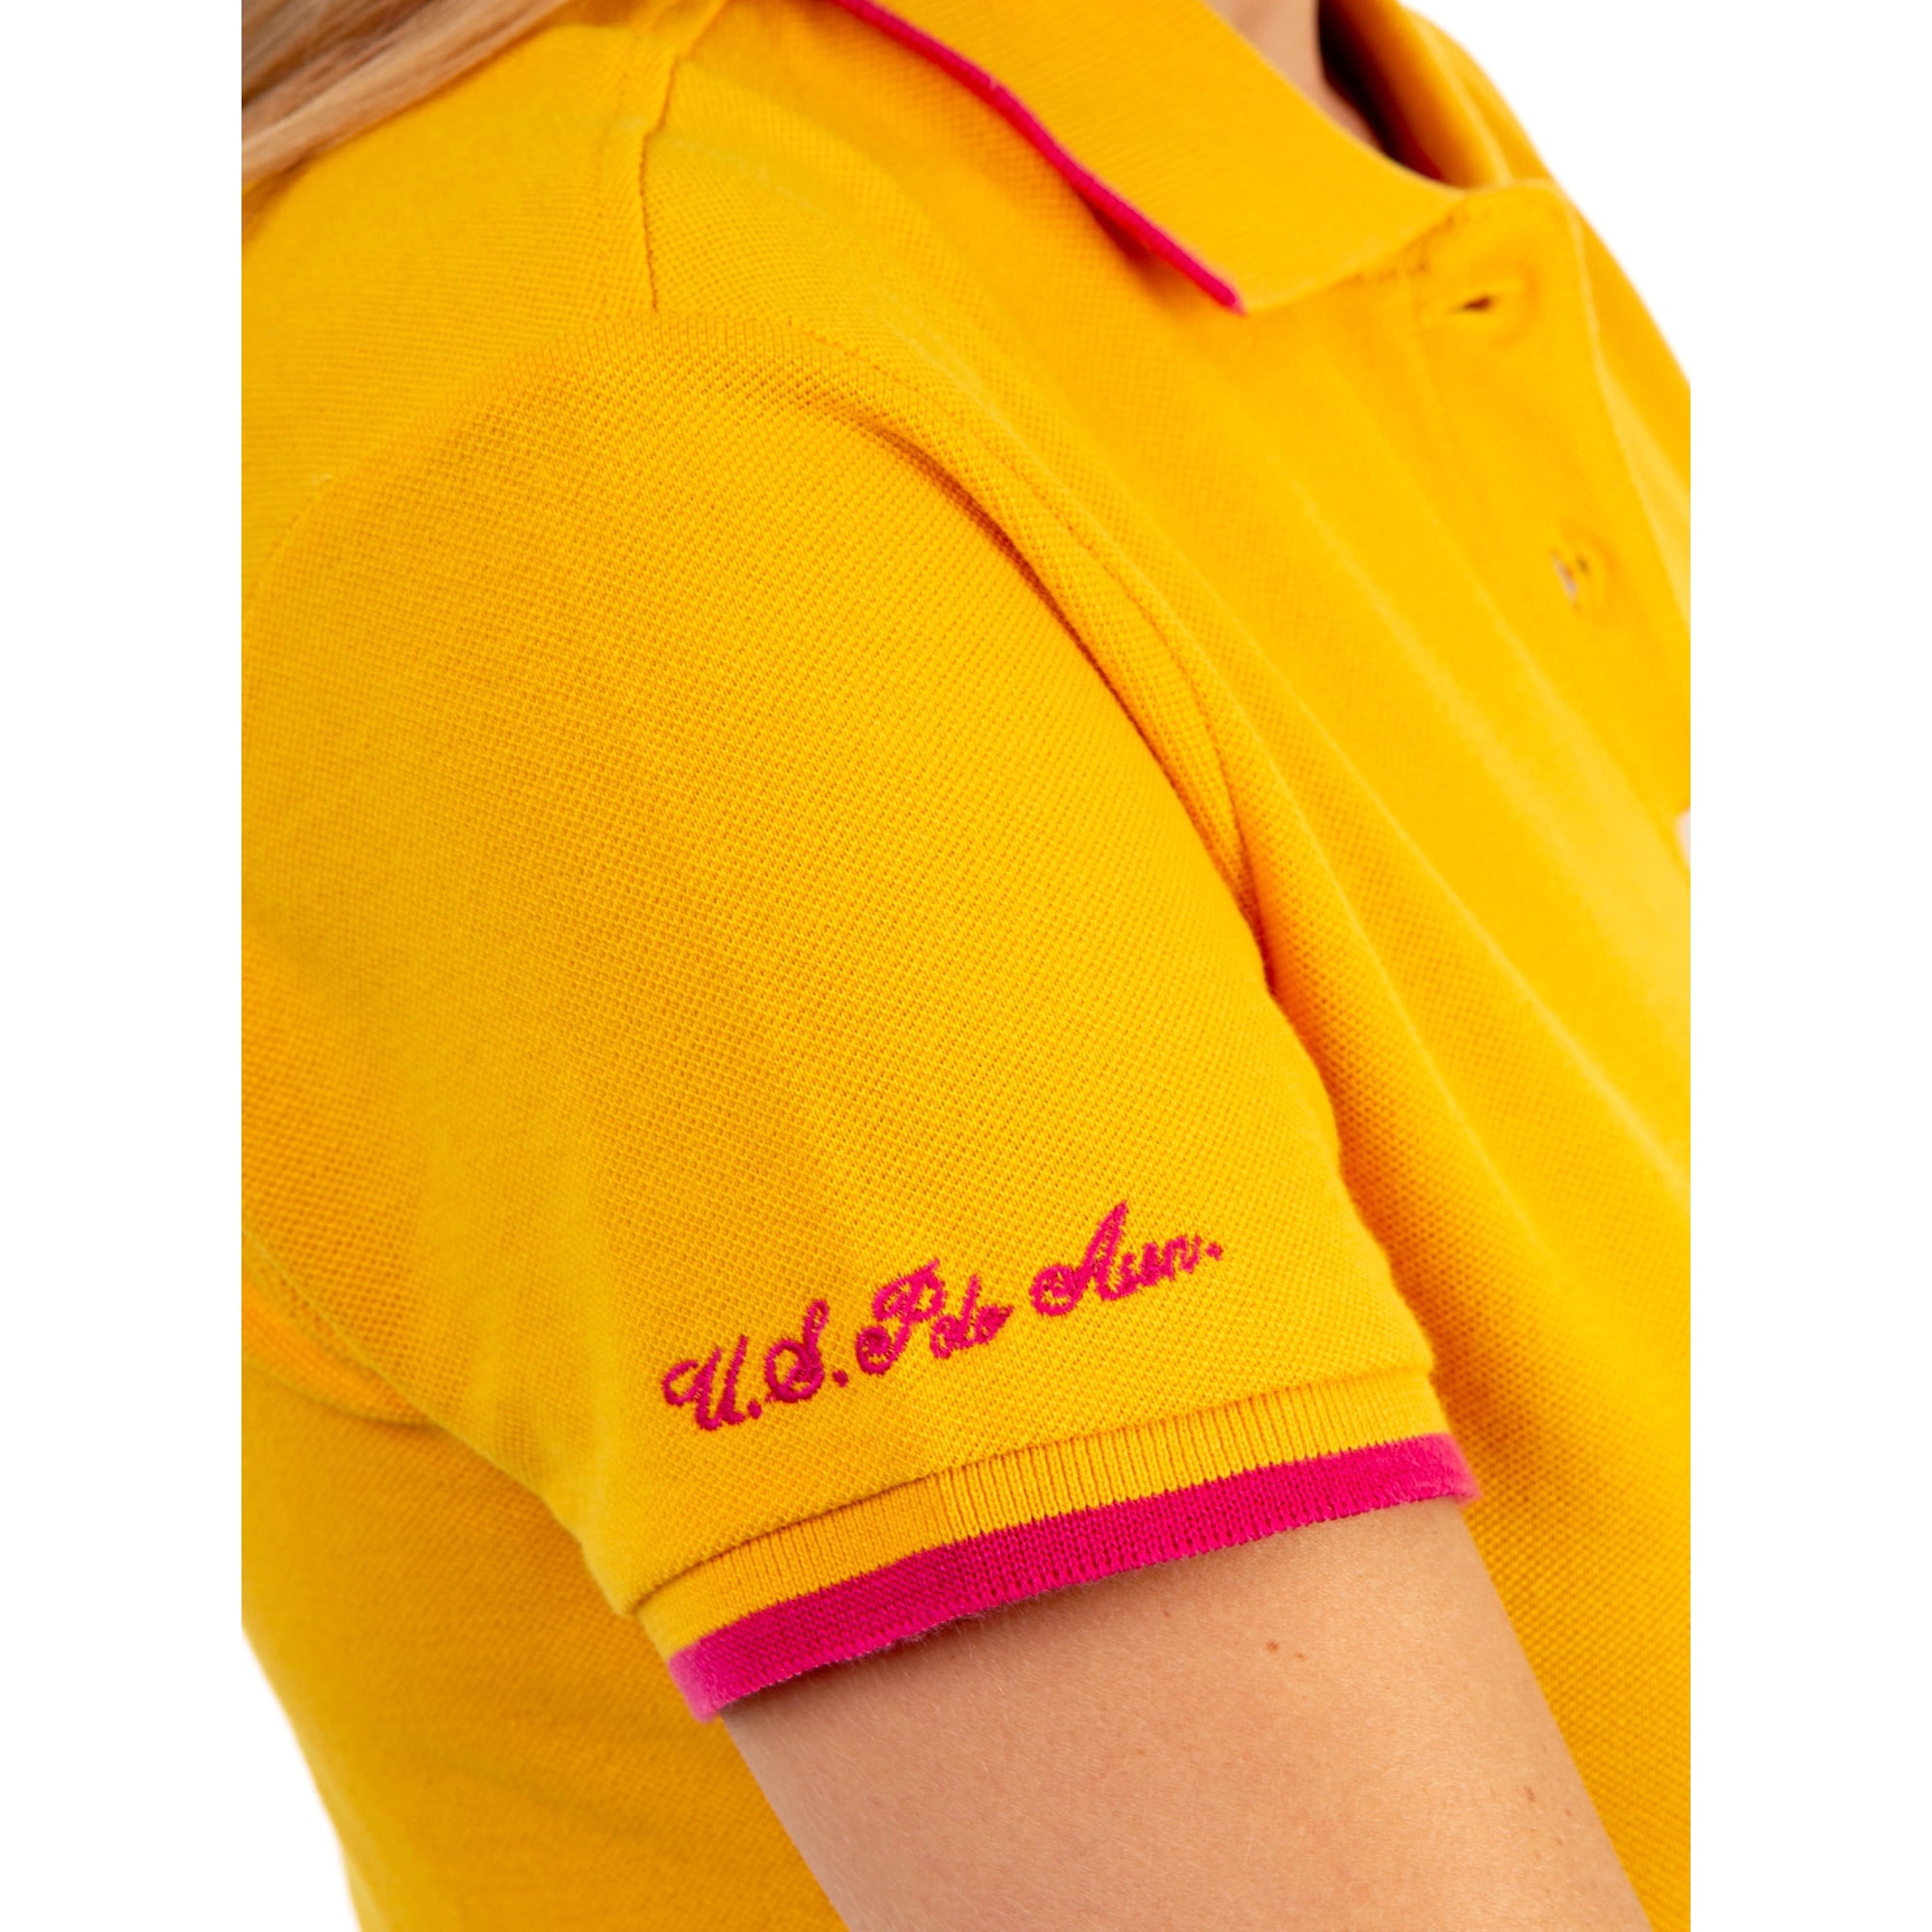 US Polo Assn. Classic Polo Dot Pique Short Sleeve Shirt, Women's 